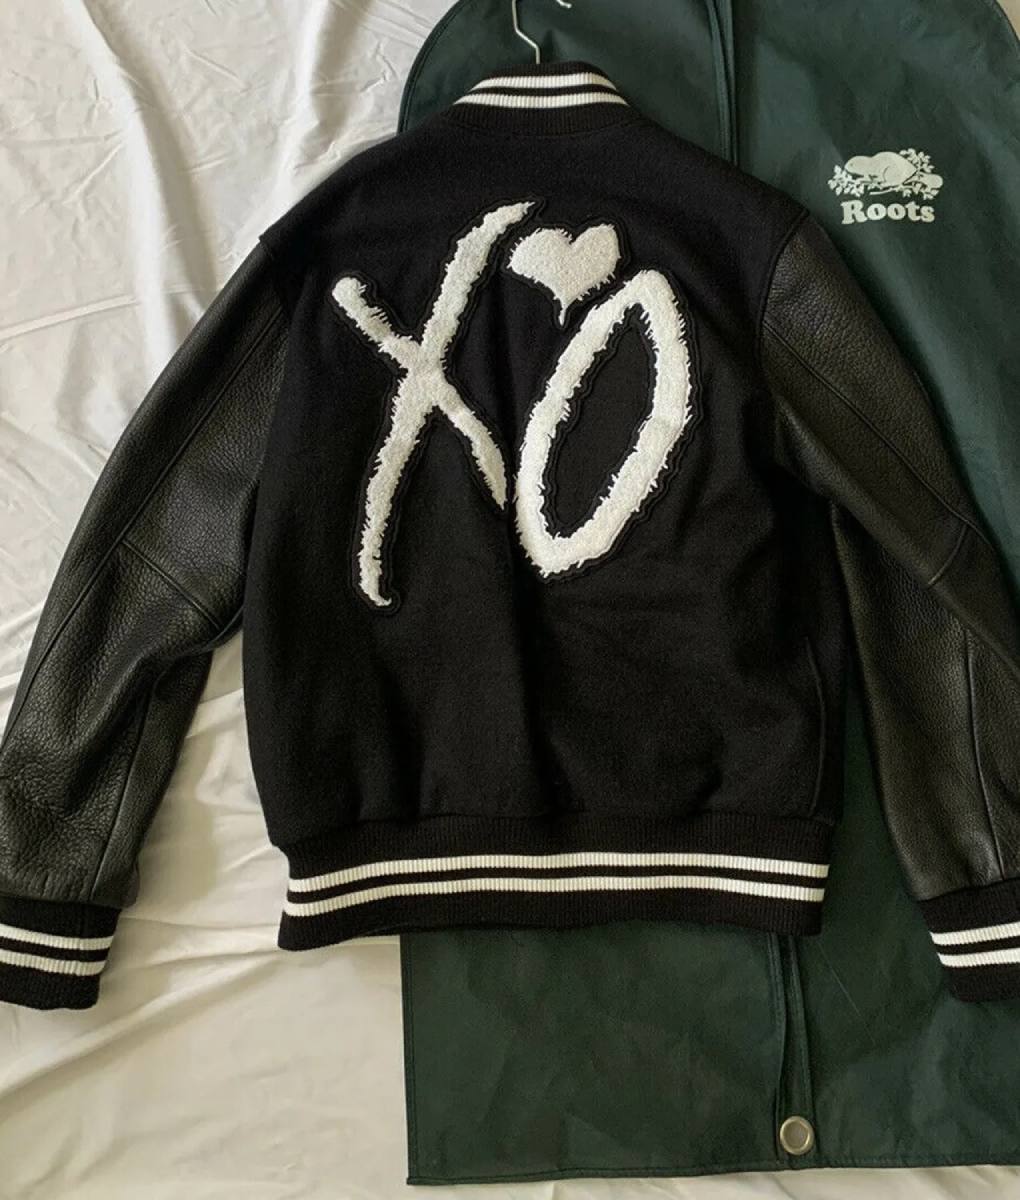 xo-award-jacket